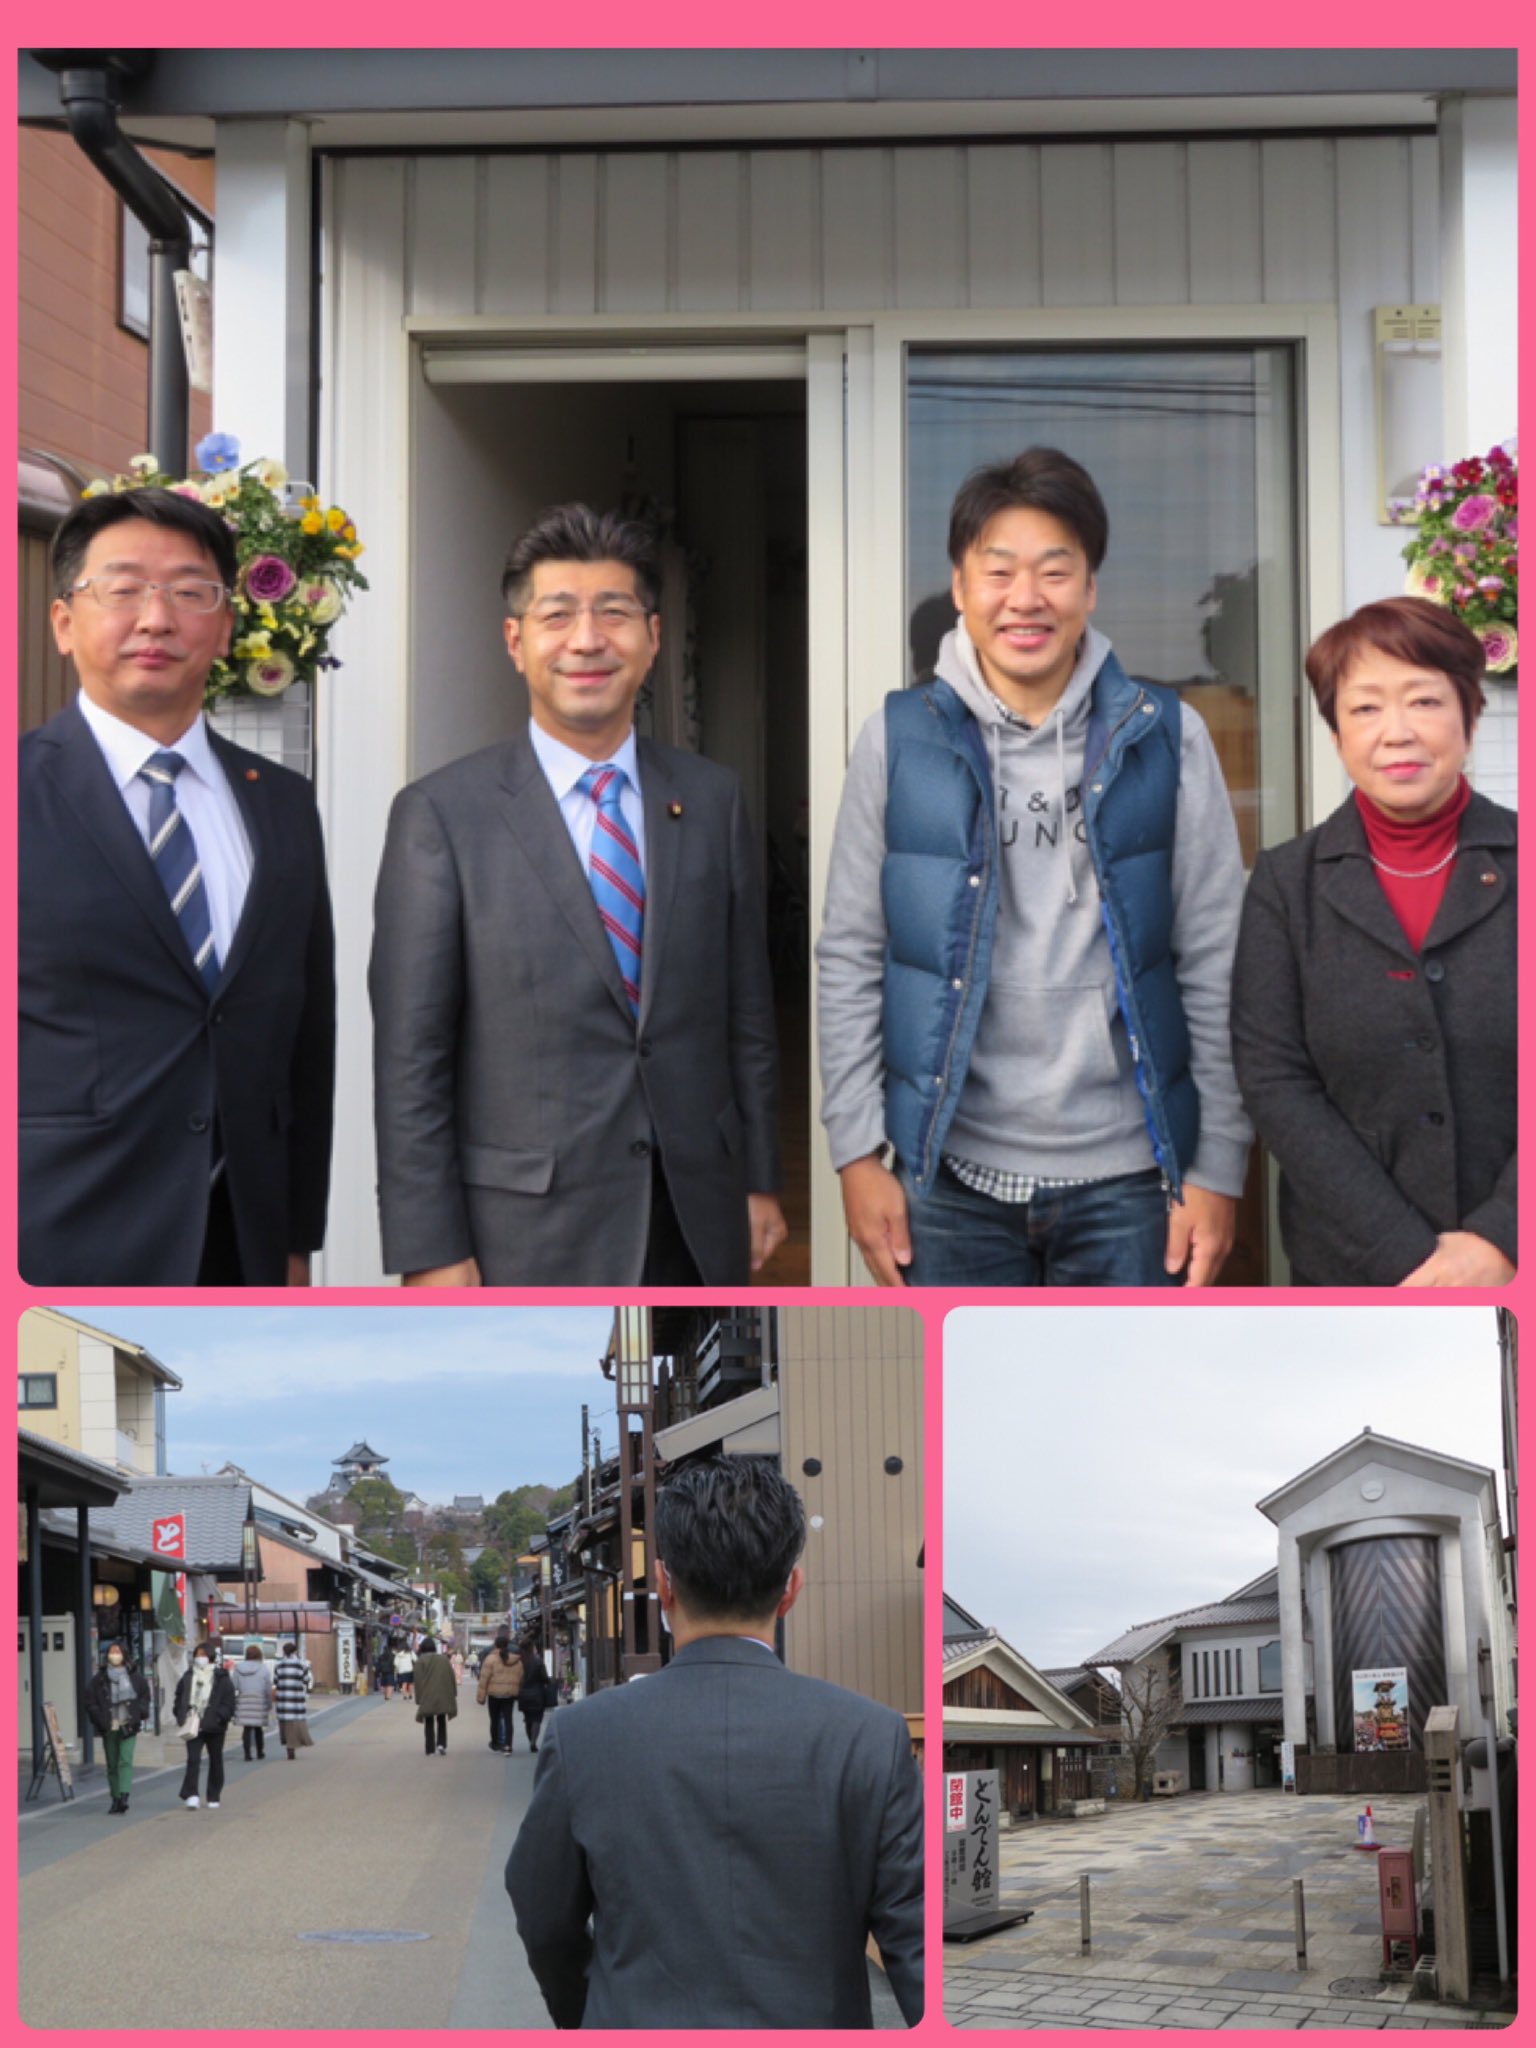 犬山市で山田拓郎市長の事務所を訪問